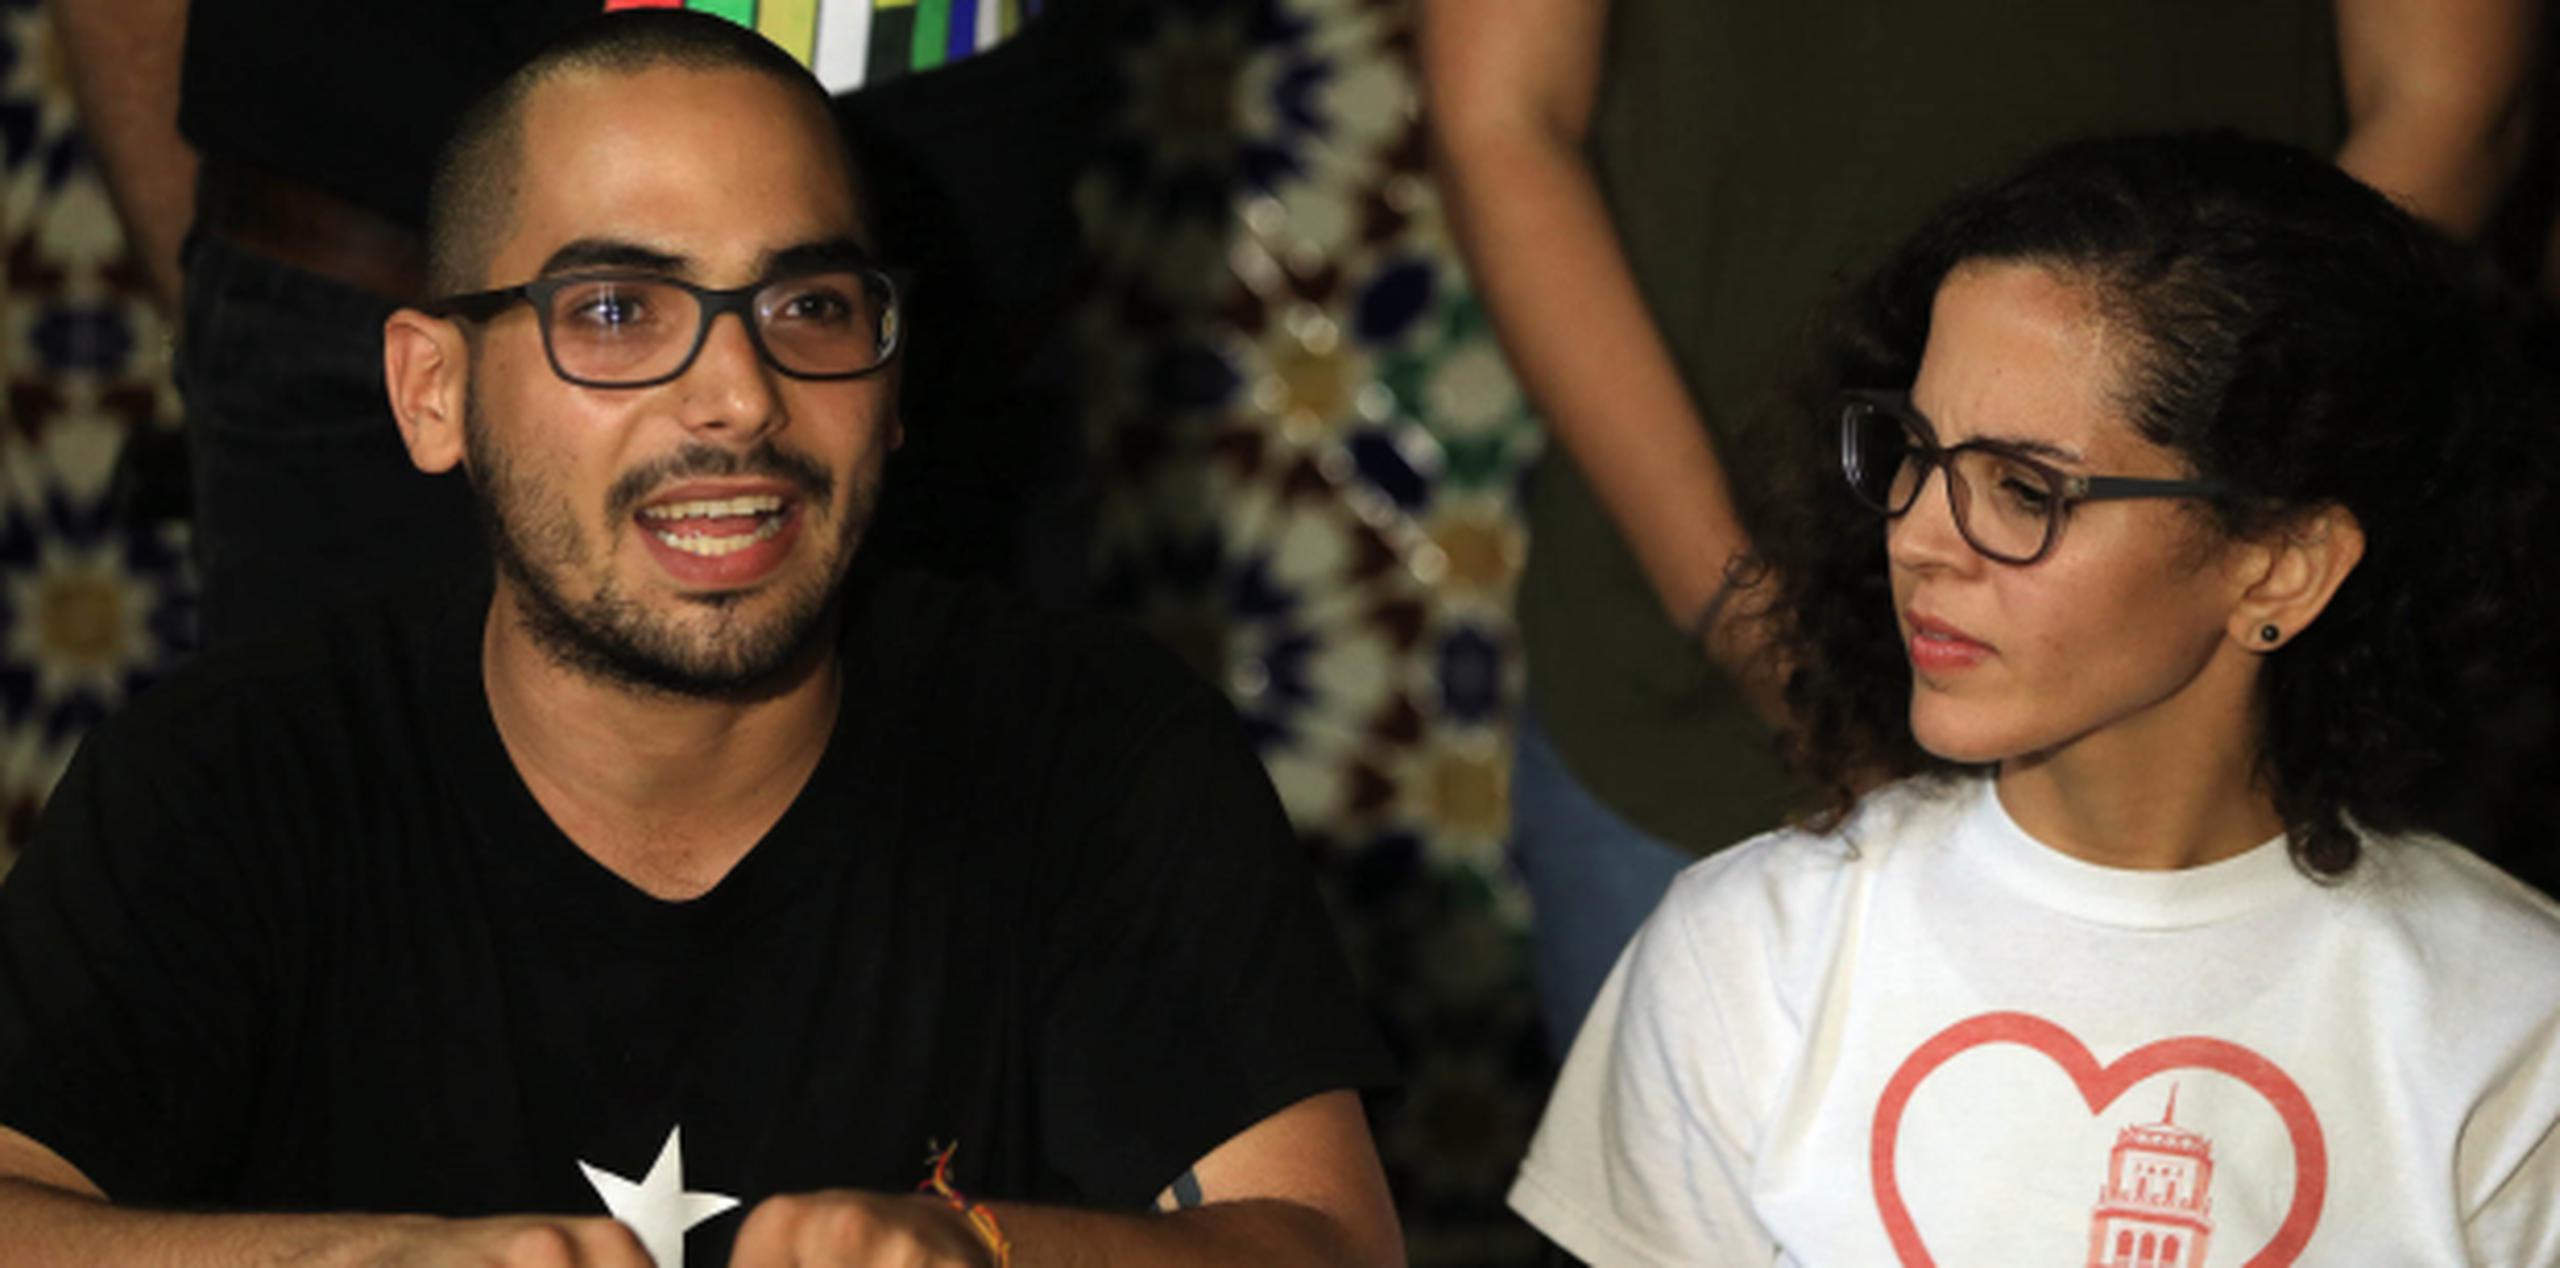 En representación de los estudiantes, Gabriel Díaz Rivera y Loderay Bracero Marrero se mantuvieron firmes en que si sus reclamos no son atendidos, no van a desistir del paro y la huelga.  (david.villafane@gfrmedia.com)